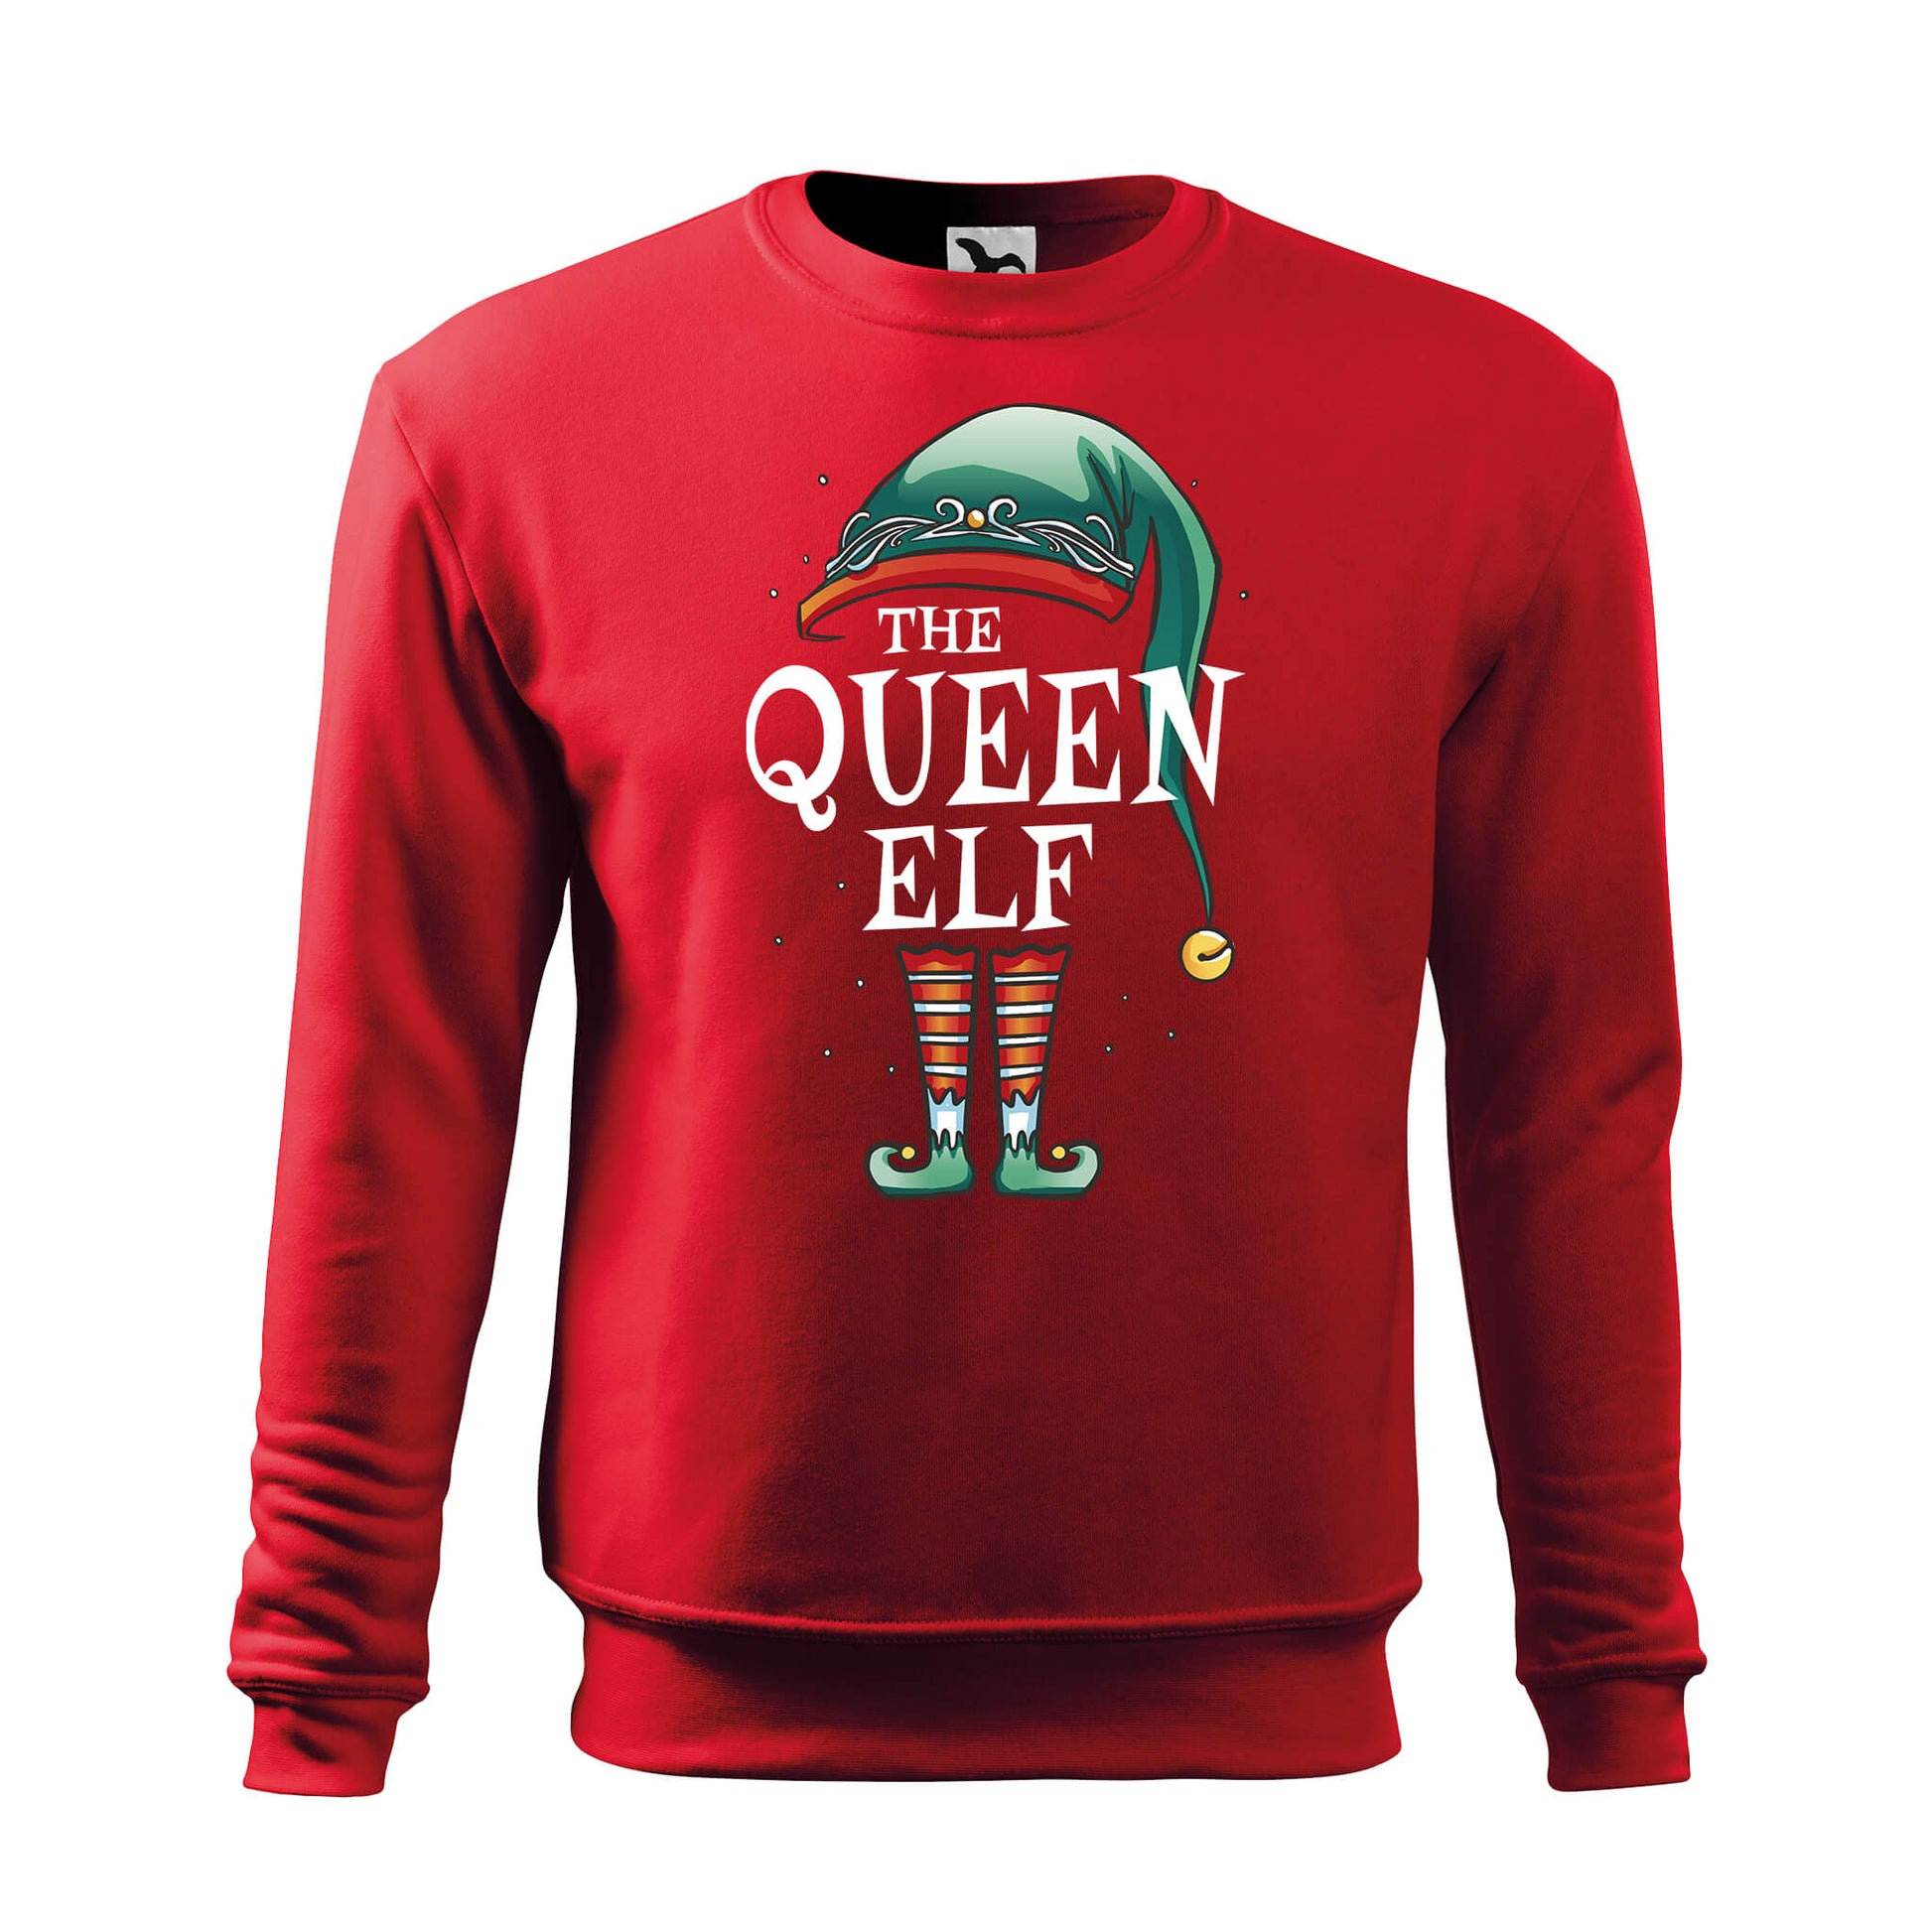 Queen elf sweatshirt - rvdesignprint